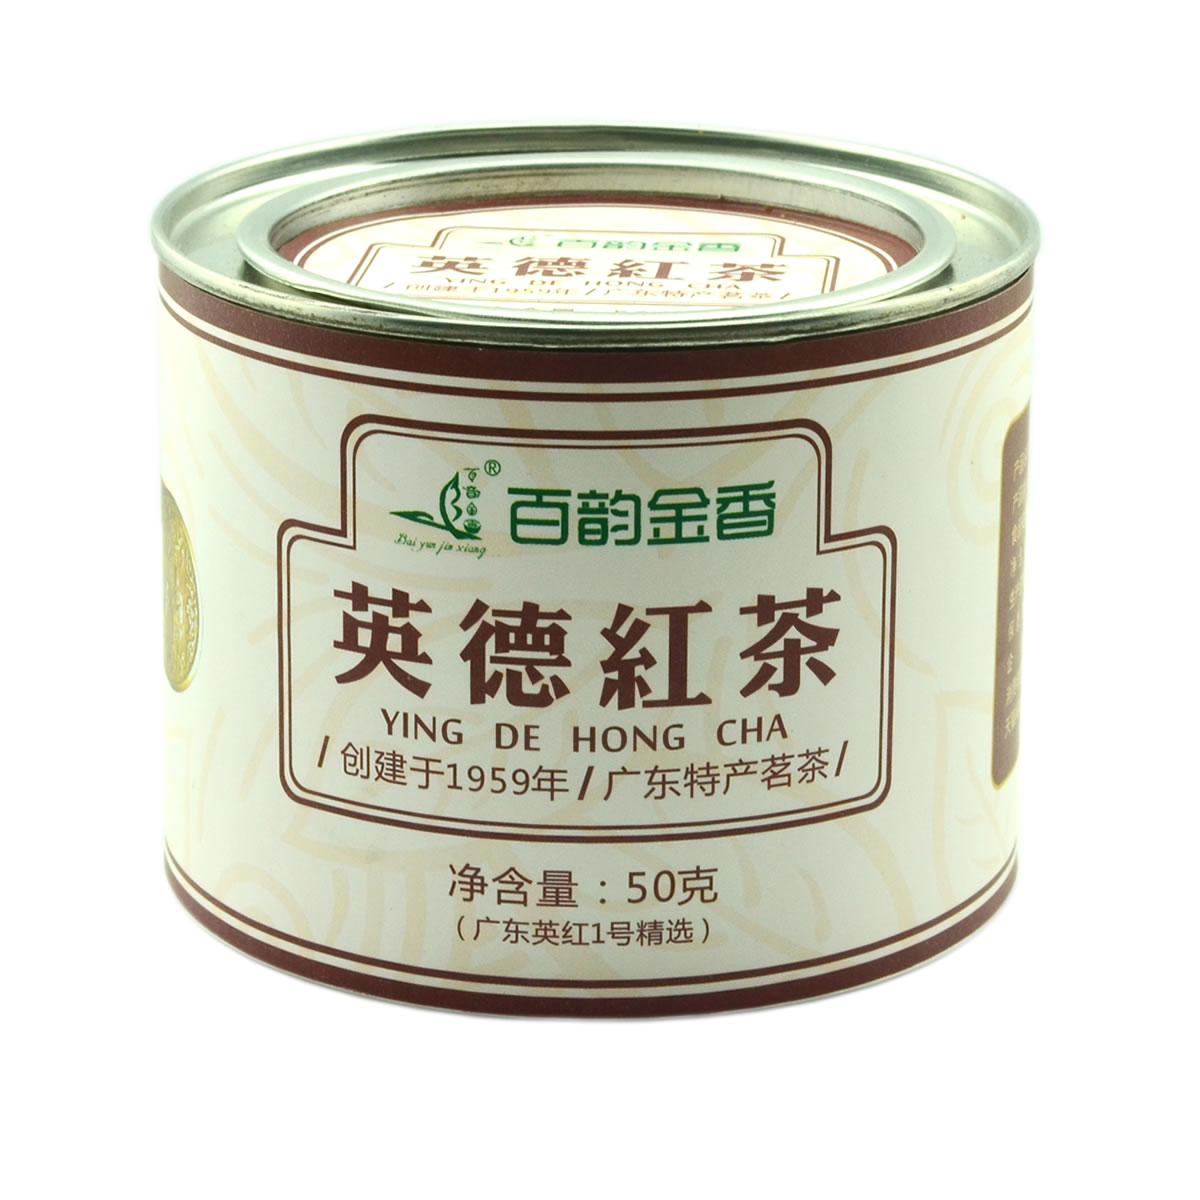 英德红茶 广东特产茗茶 创建于1959年 英洲一号 英红九号